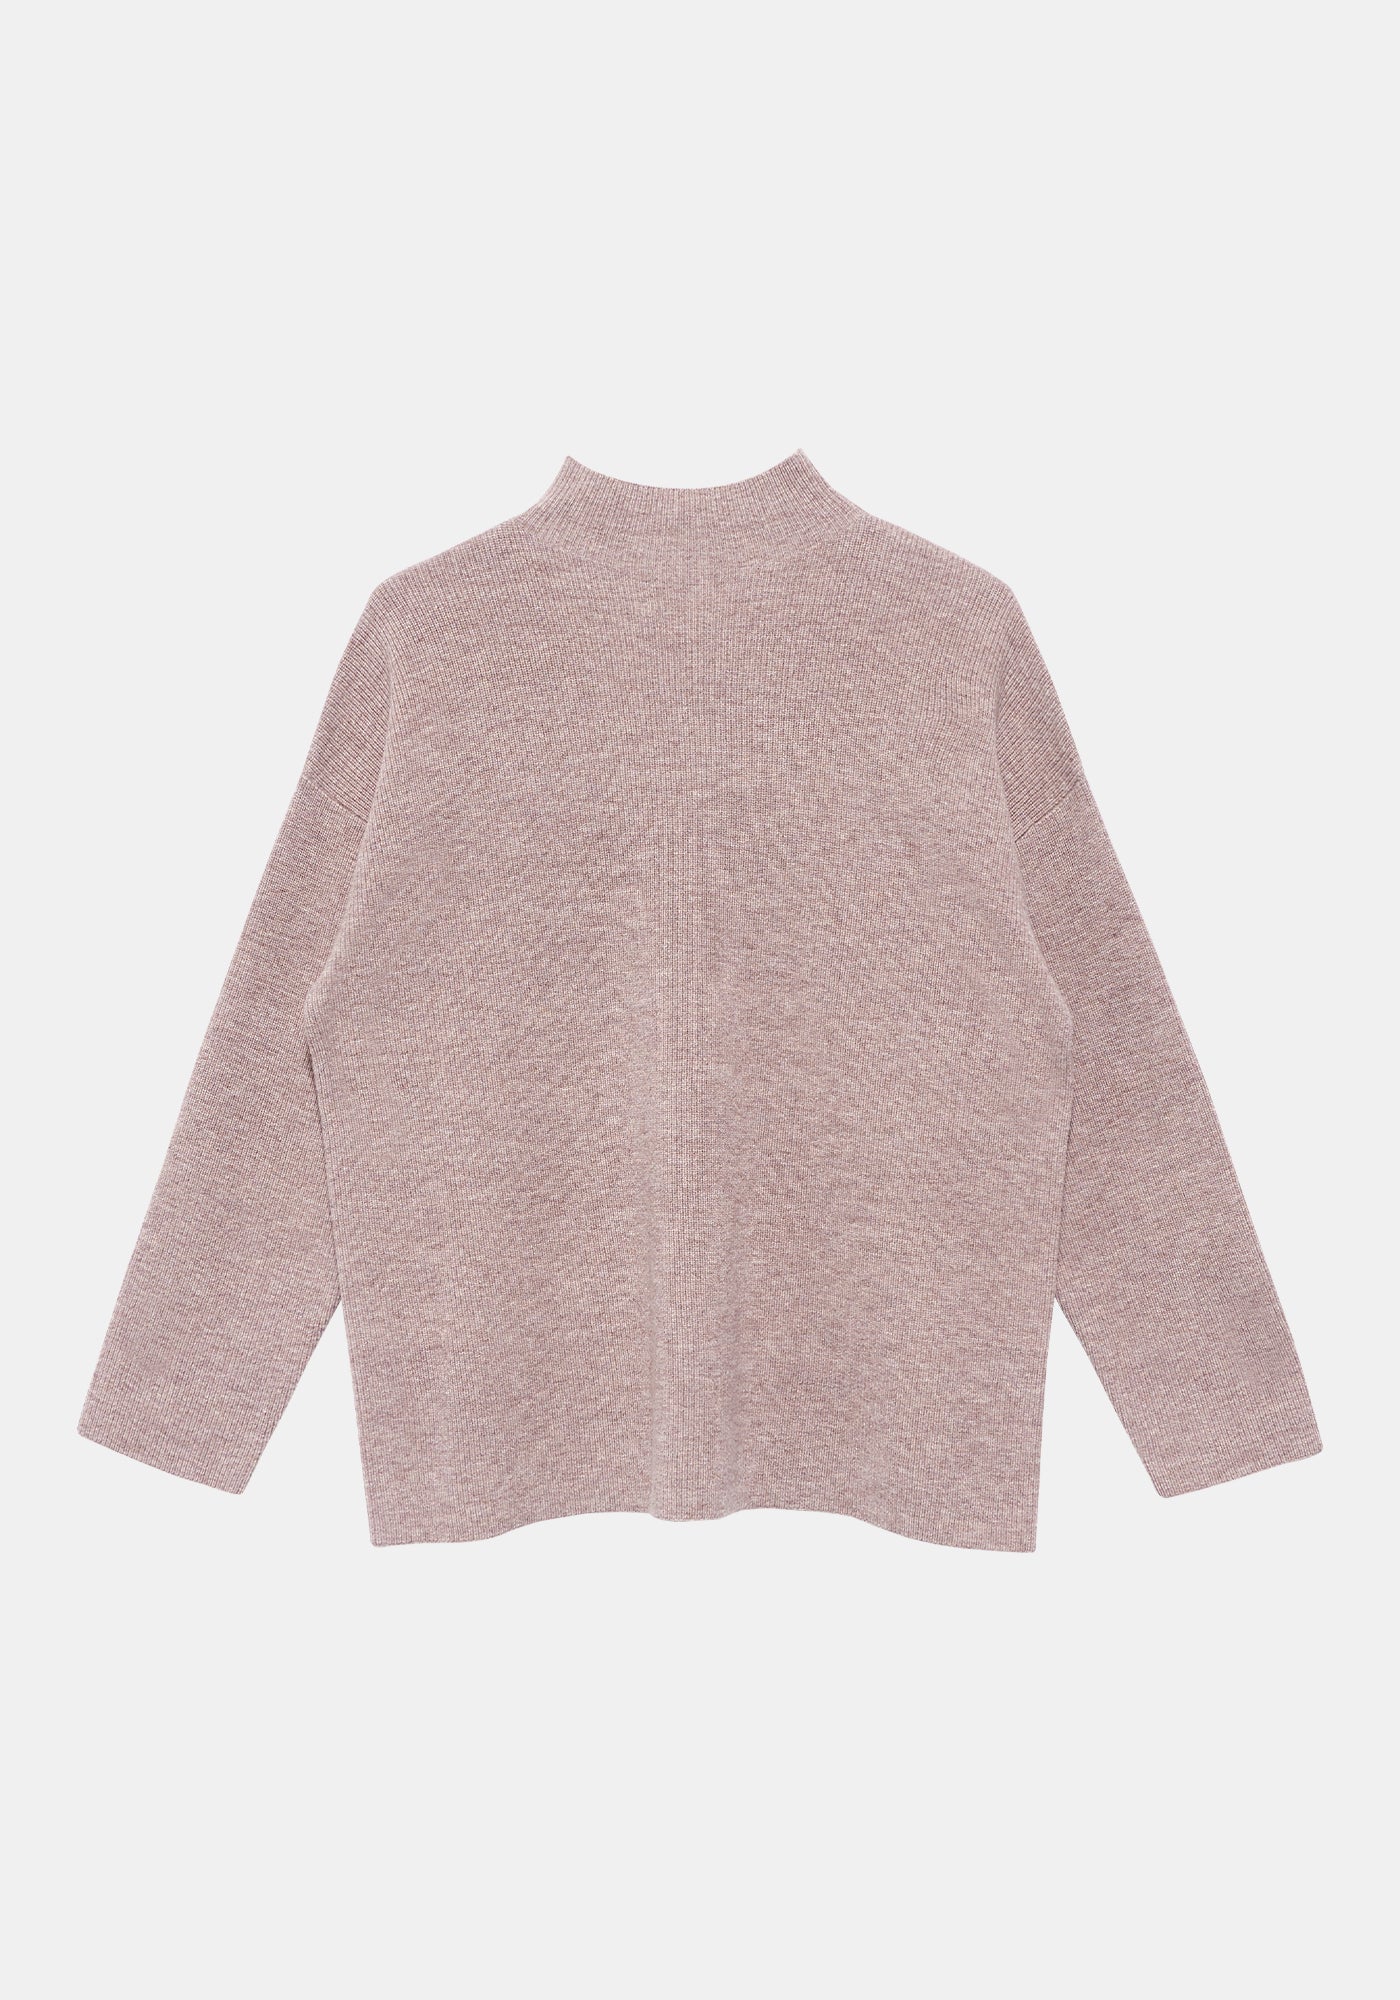 Jacory Turtleneck Sweater